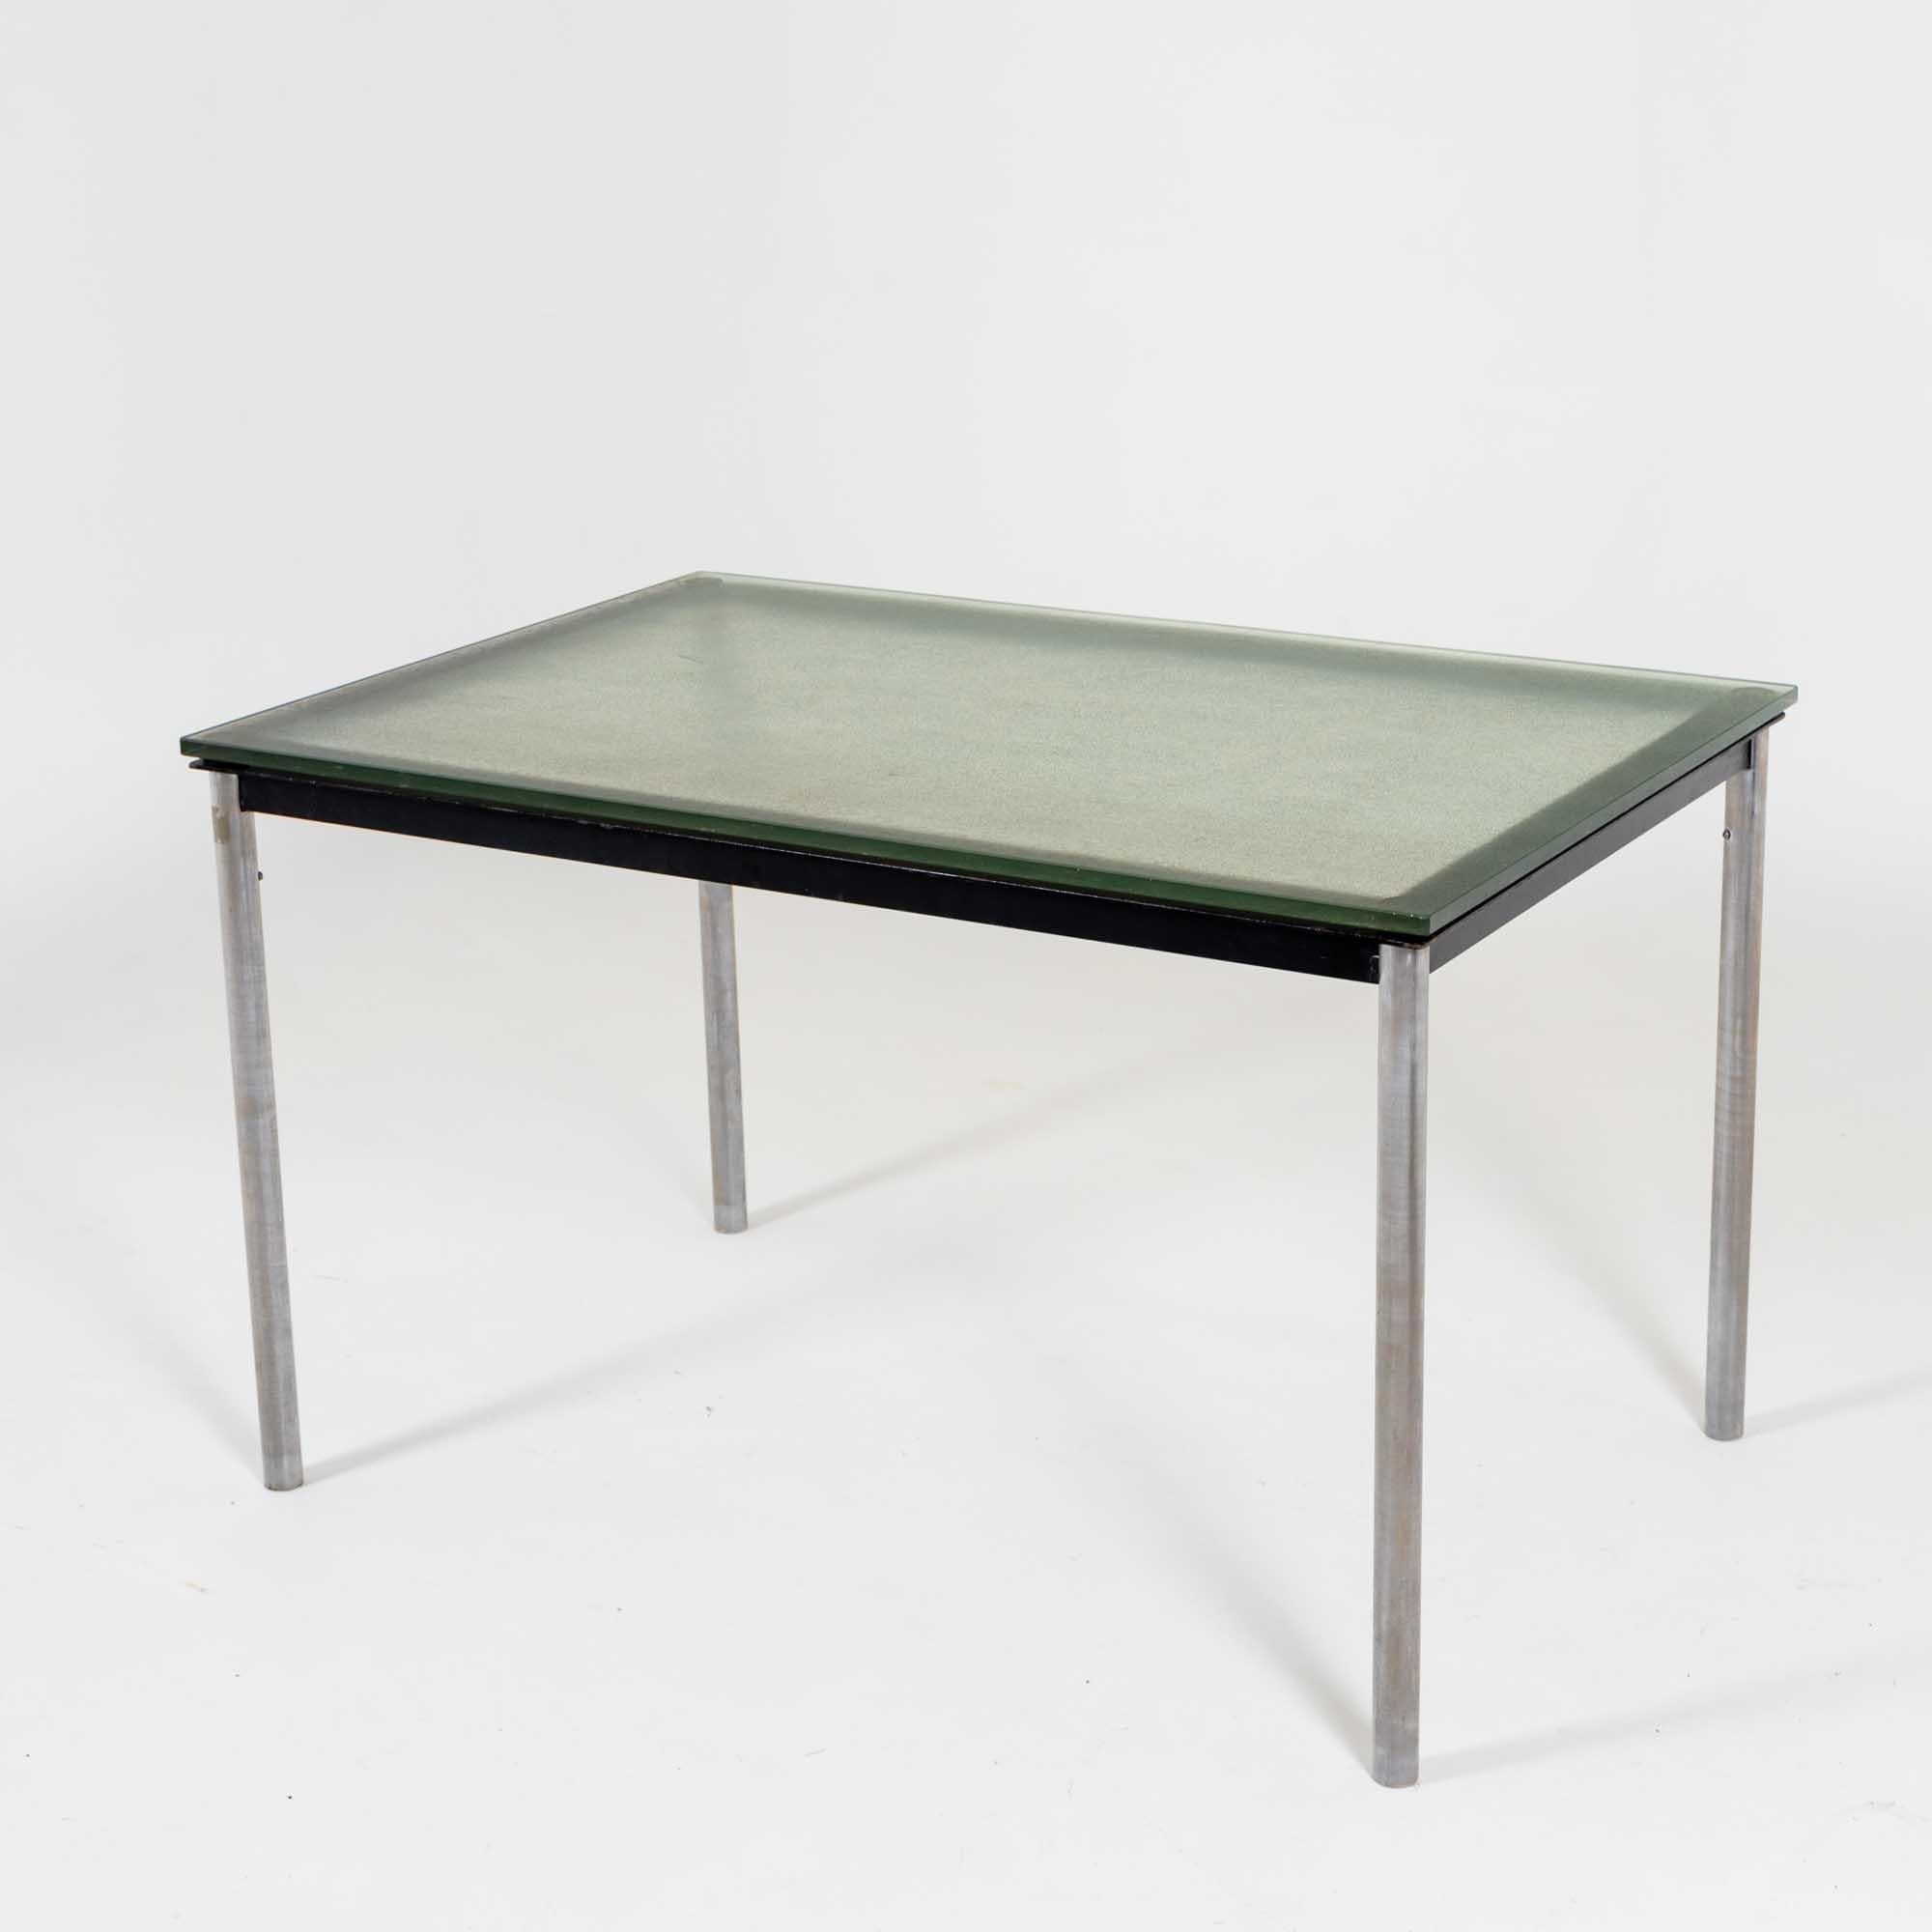 Table ou bureau rectangulaire conçu par Le Corbusier en 1928. Il s'agit d'une édition ultérieure de la société Cassina. La table repose sur des pieds chromés et le plateau en verre teinté vert à la surface légèrement structurée repose sur un cadre